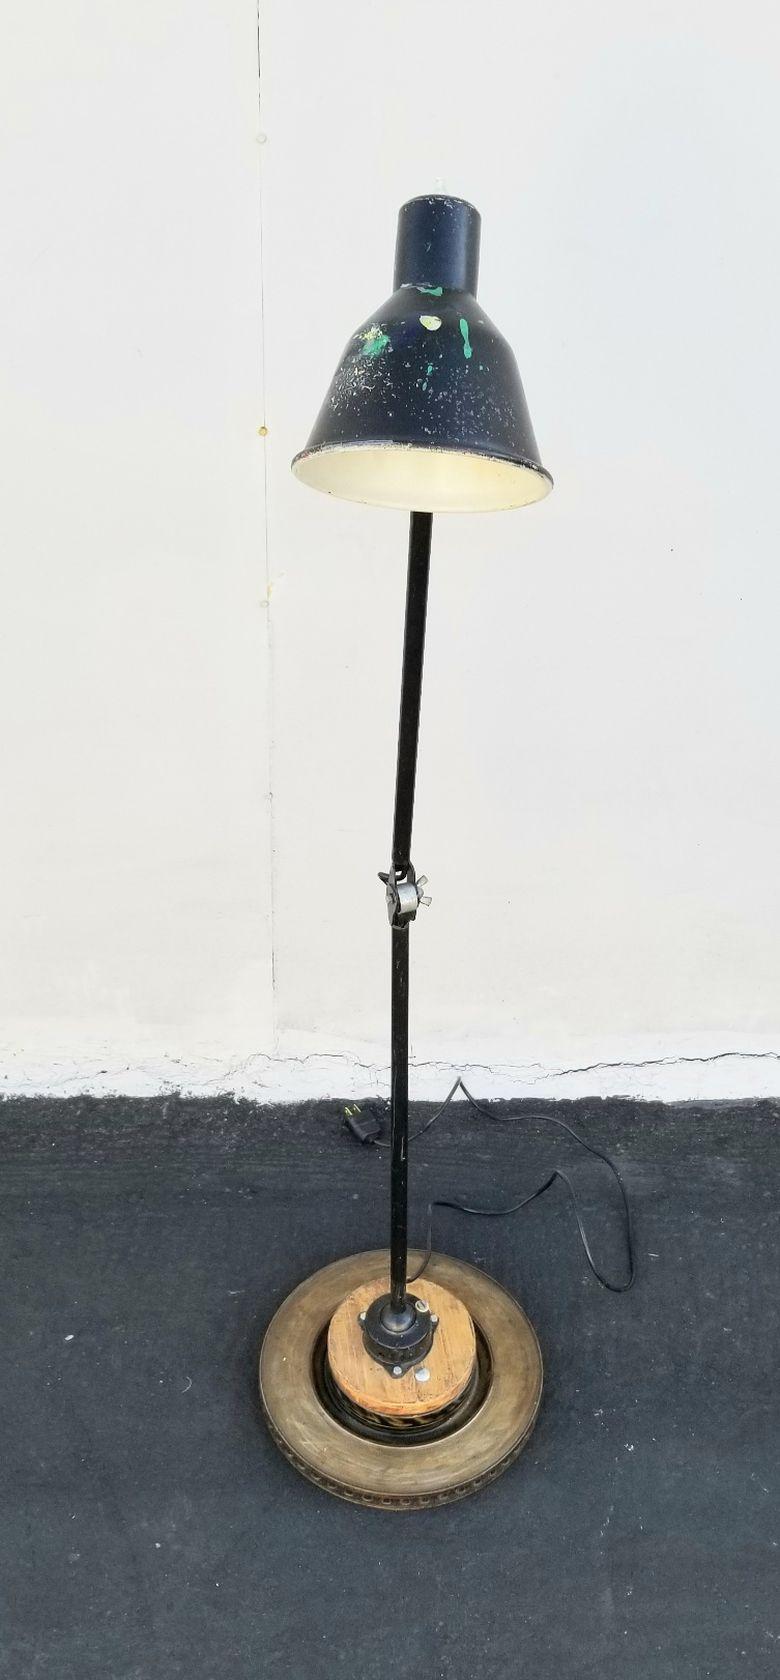 Paire de lampadaires industriels acheter Gimo Fero. Les lampadaires ne sont pas identiques, mais il s'agit bien d'une paire. Le pied de la lampe est réglable sur les 3 places.